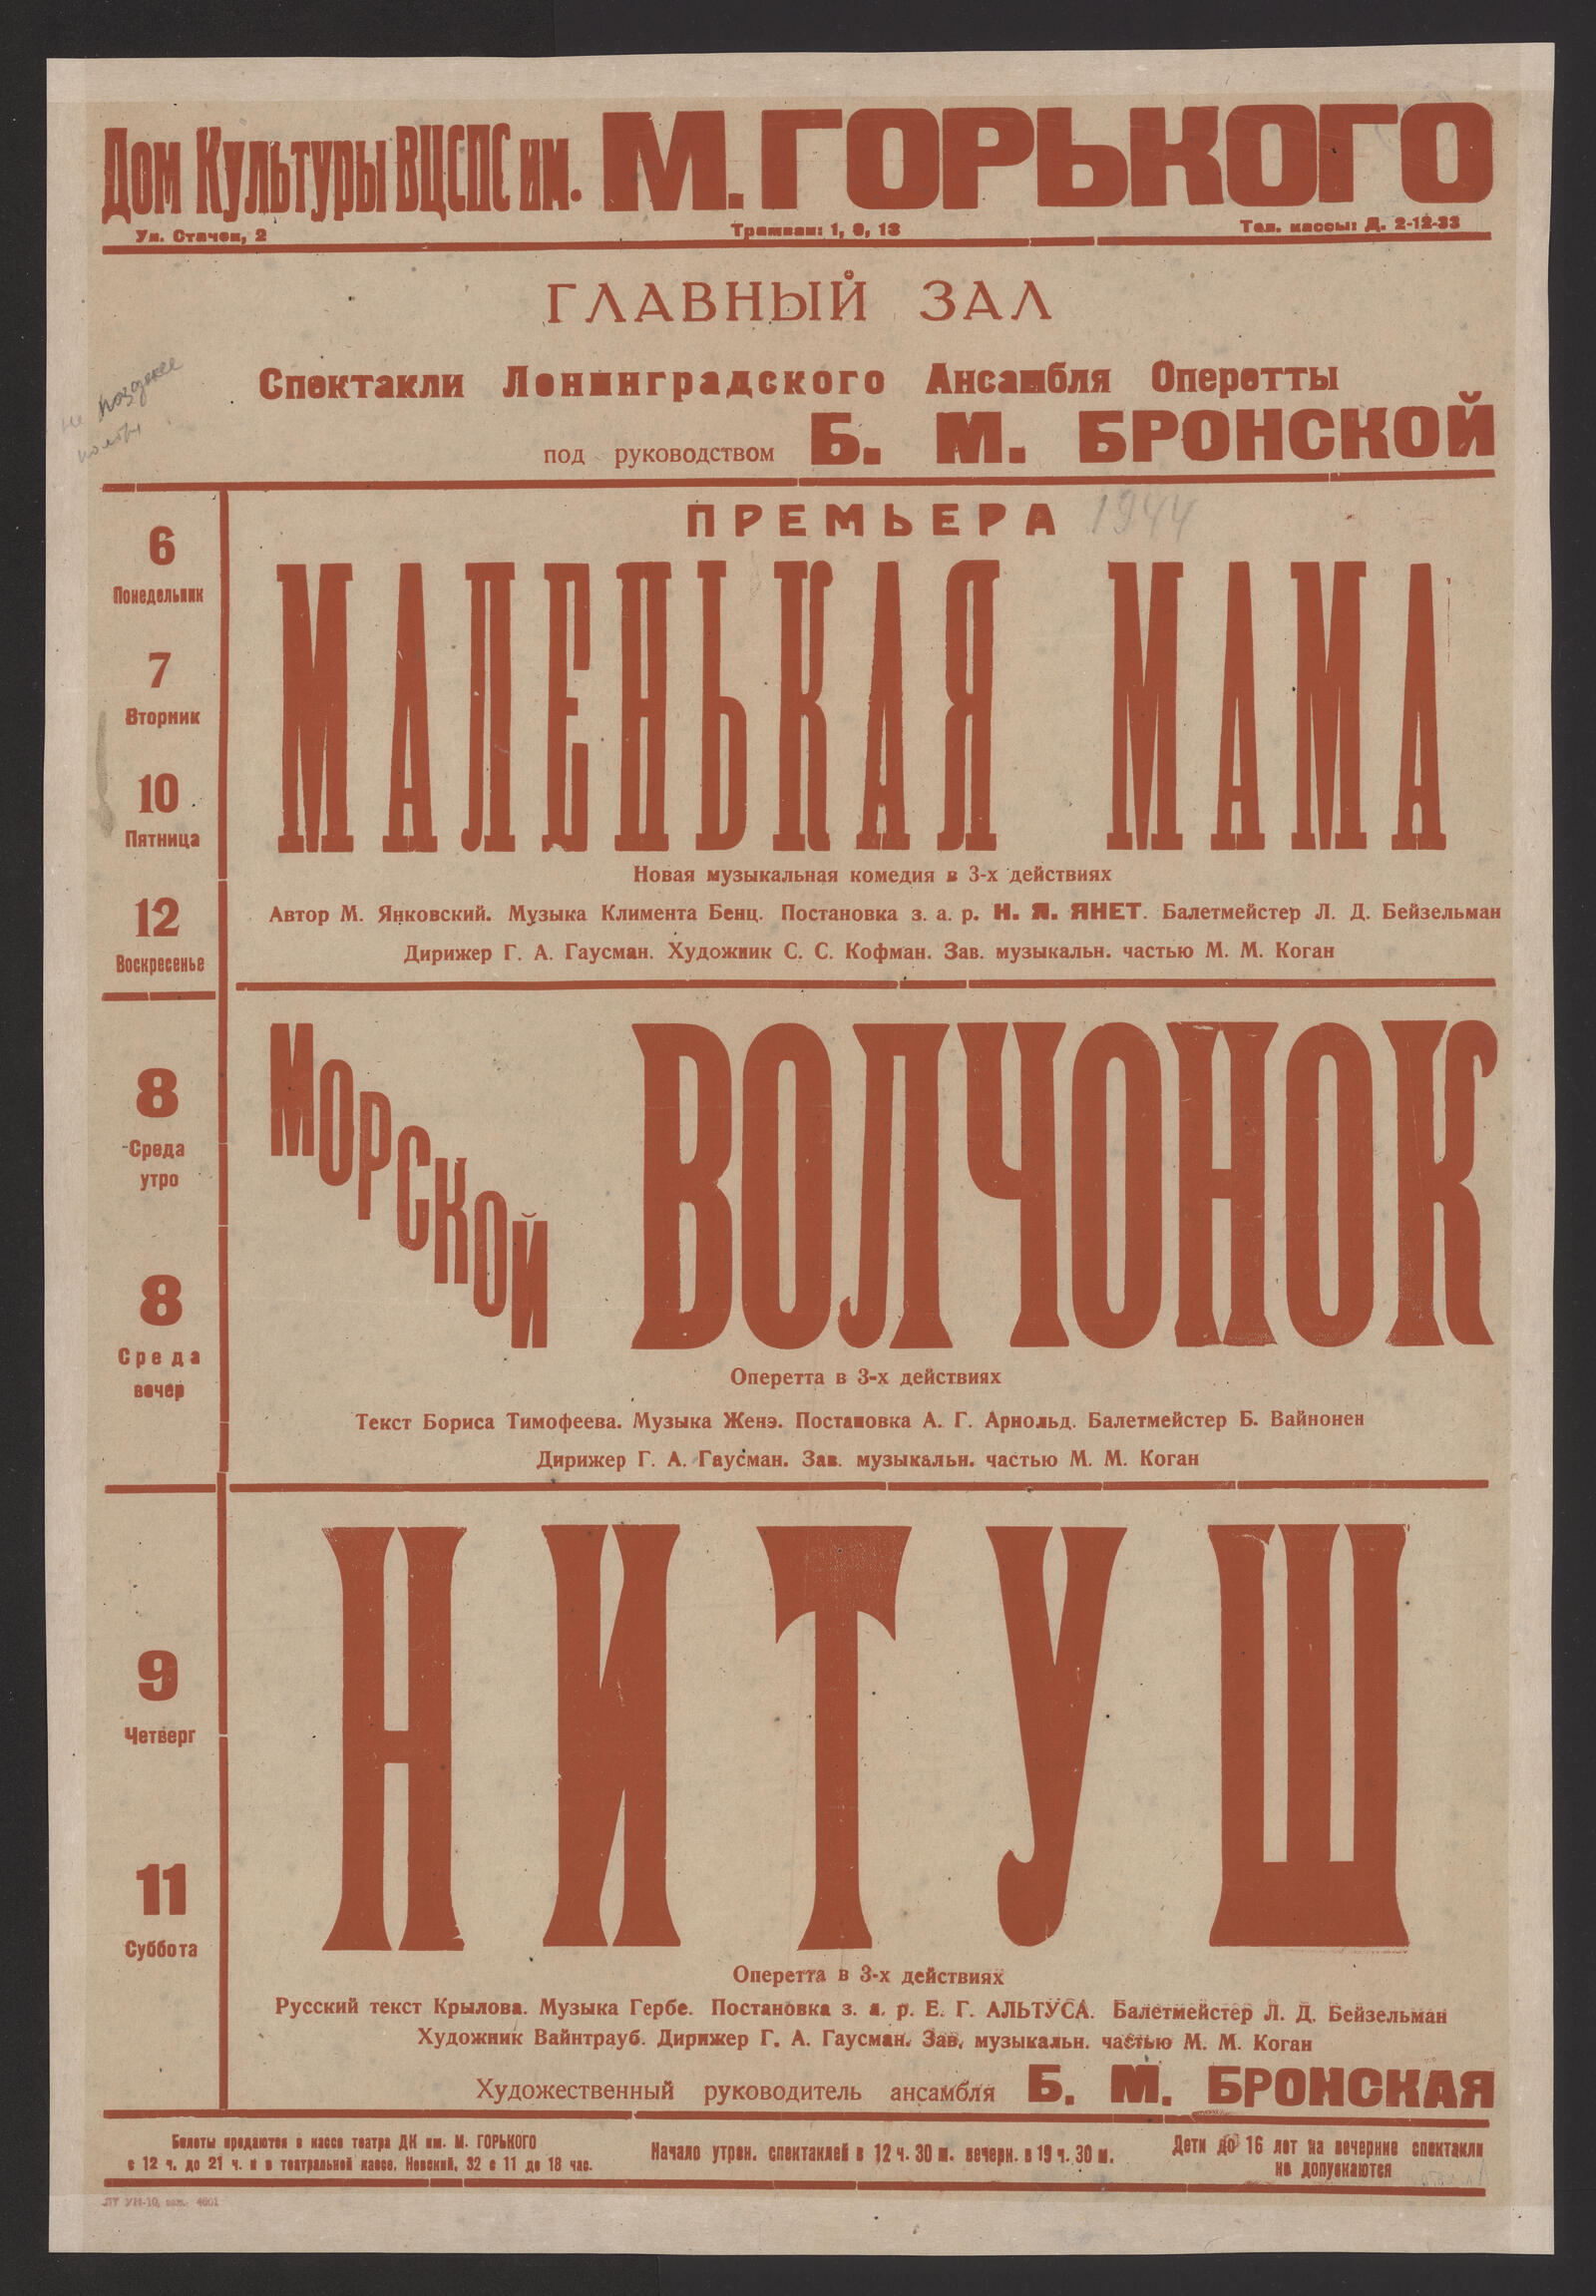 Изображение Спектакли Ленинградского Театра Оперетты под руководством Б.М. Бронской